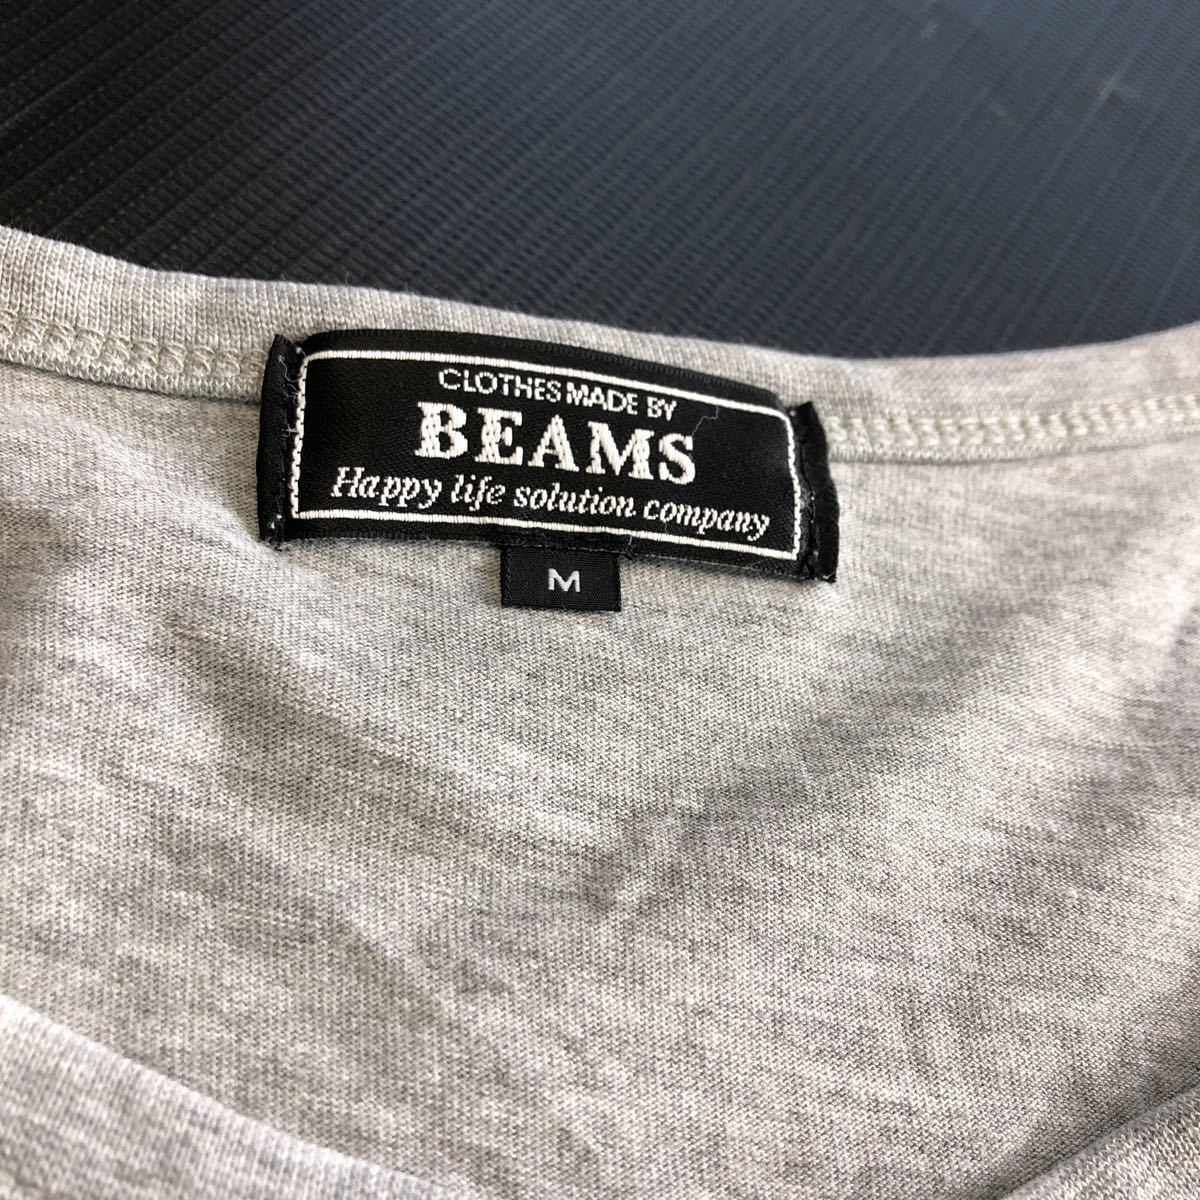 BEAMS ビームス Tシャツ メンズ Mサイズ グレー系 トップス 半袖 (管理番号W379)_画像2